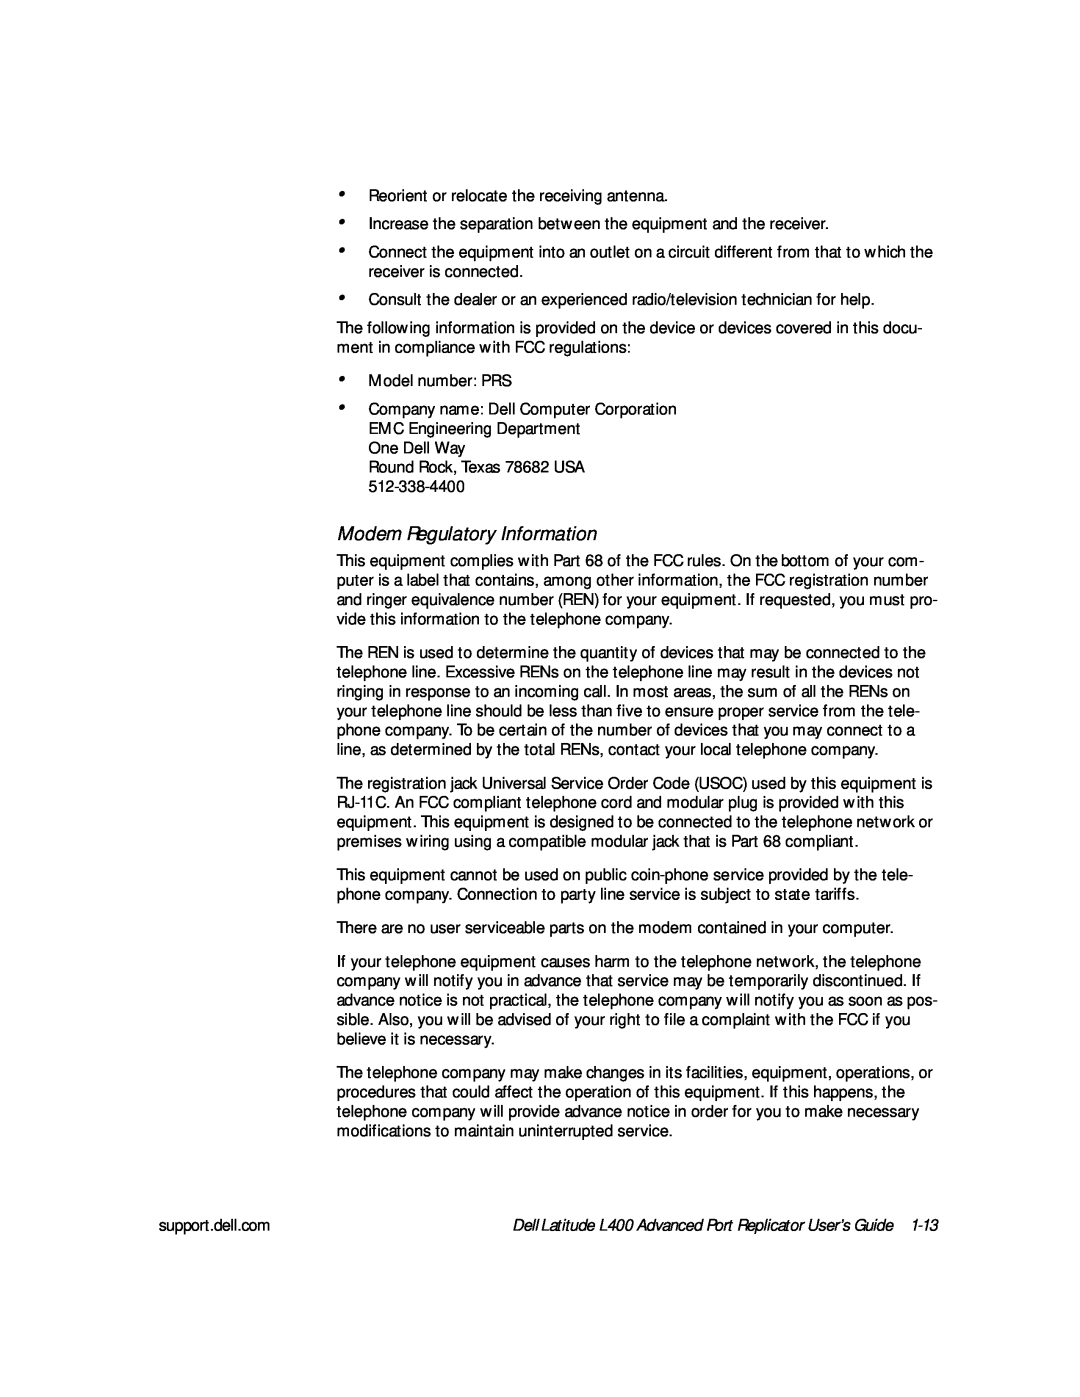 Dell L400 manual Modem Regulatory Information 